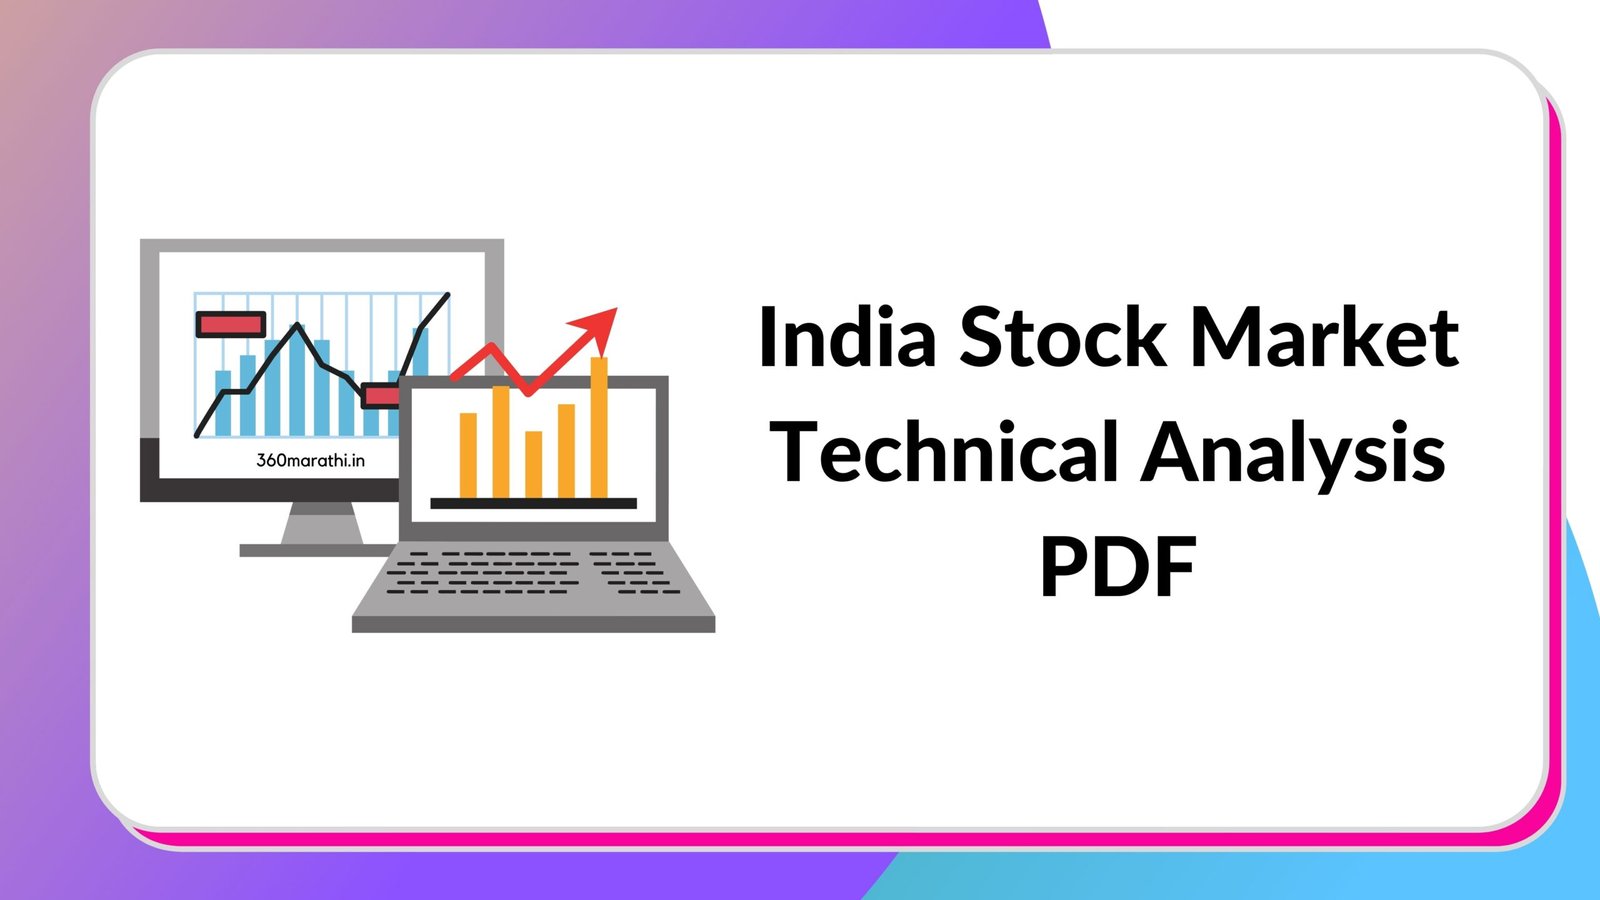 India Stock Market Technical Analysis PDF